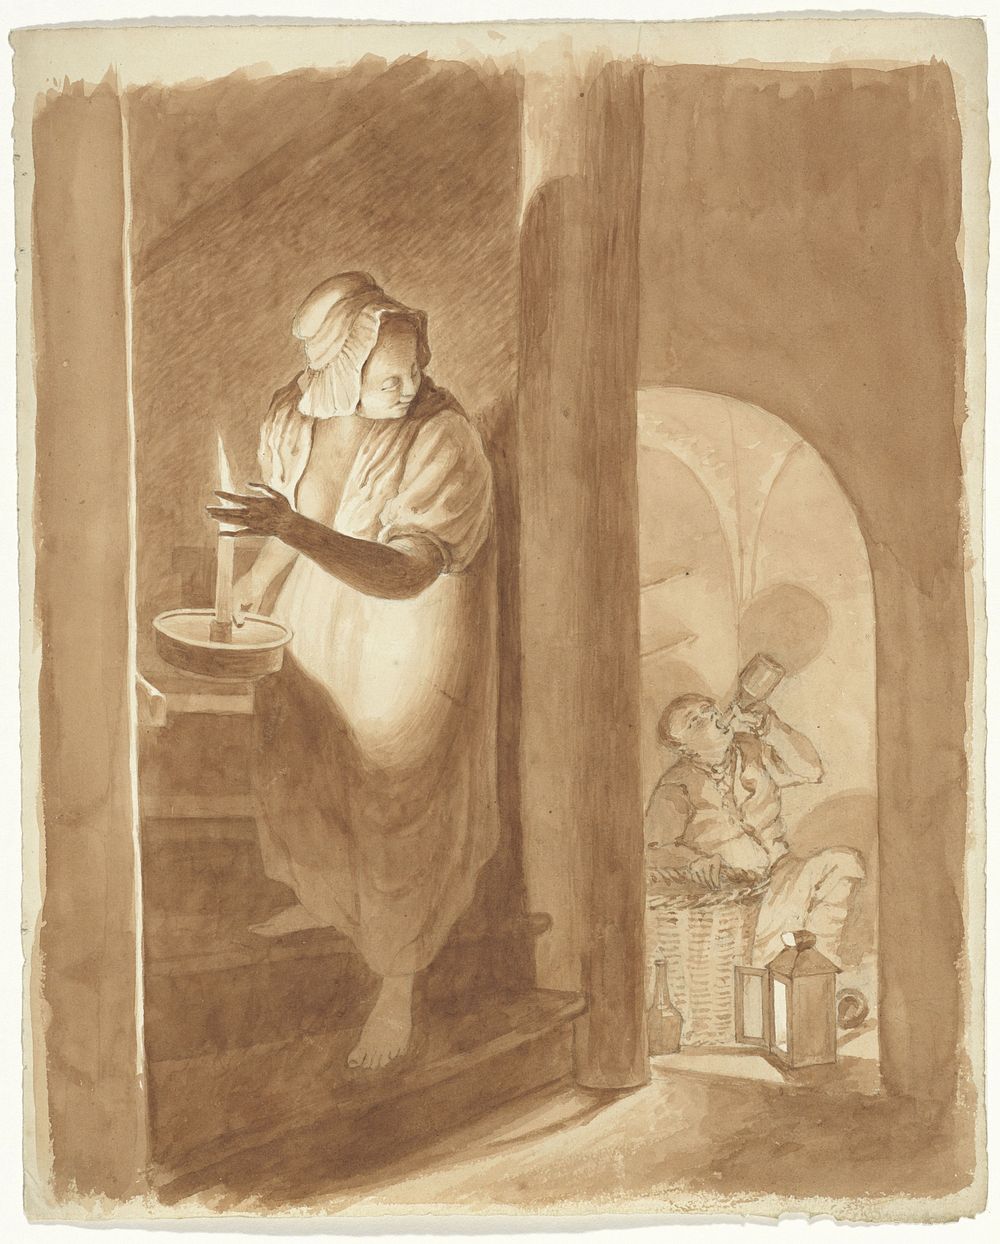 Vrouw die een drinkende man bespiedt (1811 - 1873) by Pieter van Loon